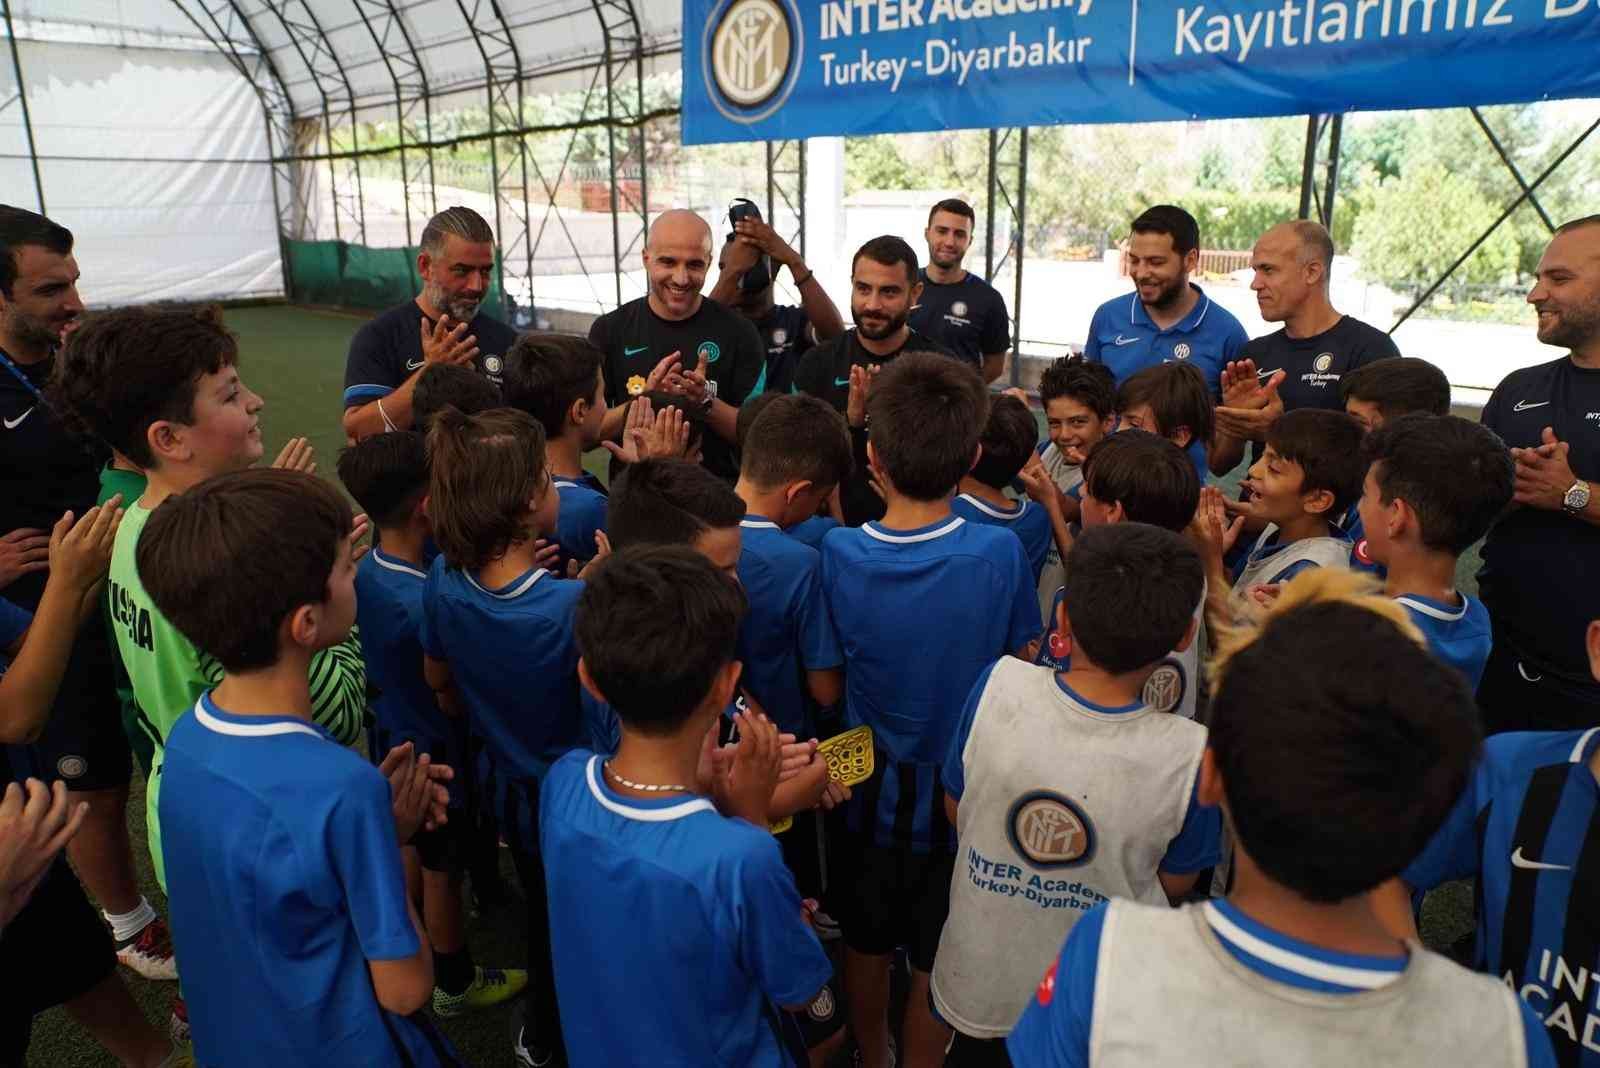 İnter, Diyarbakır’da futbolcu seçecek #diyarbakir